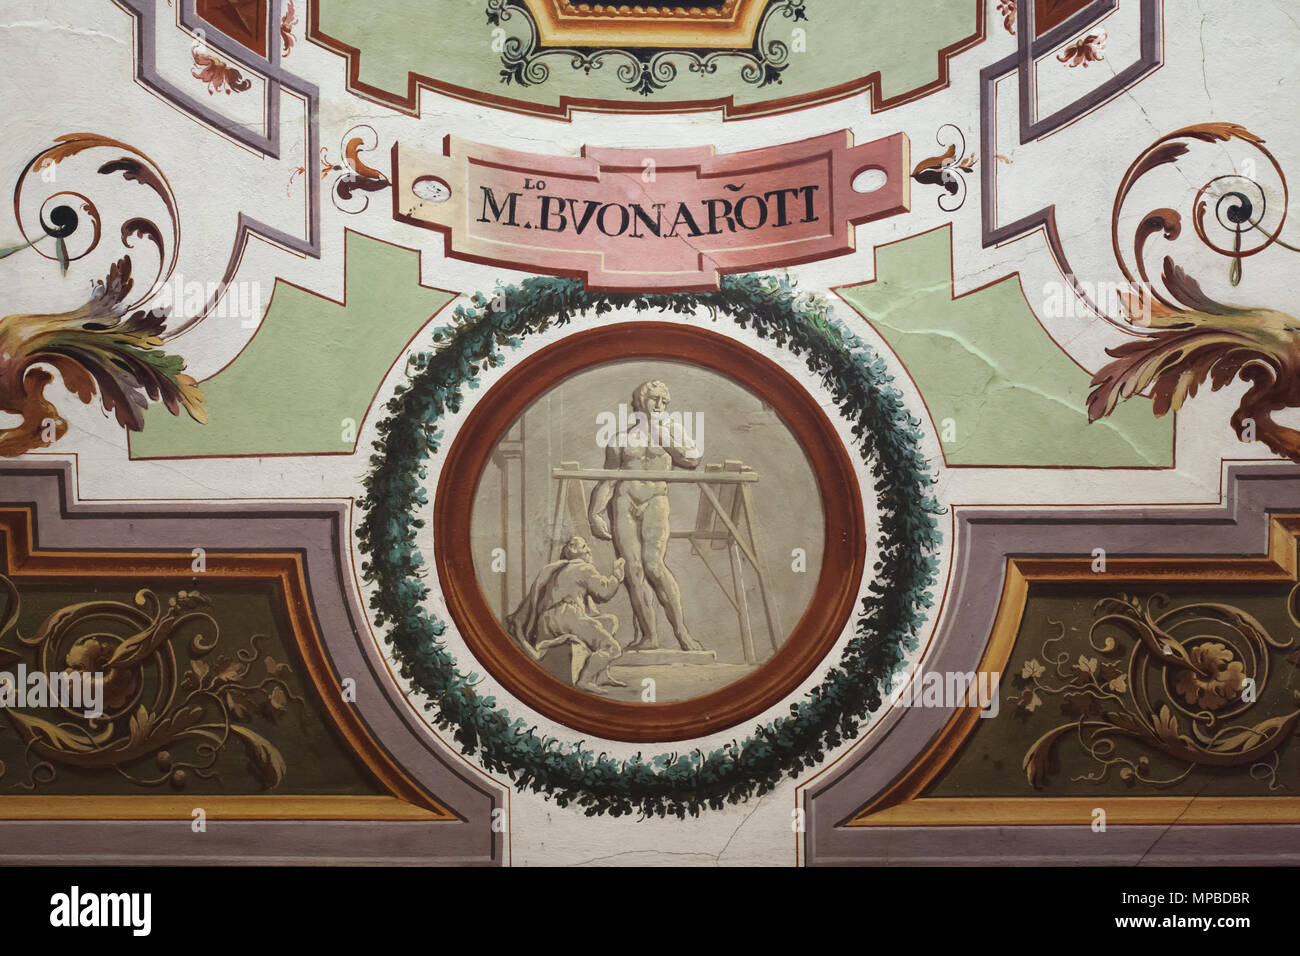 Italienische Renaissance Bildhauer Michelangelo Buonarroti arbeiten auf dem Marmor statue des David in das Deckenfresko im Vasari Korridor in den Uffizien (Galleria degli Uffizi) in Florenz, Toskana, Italien dargestellt. Stockfoto